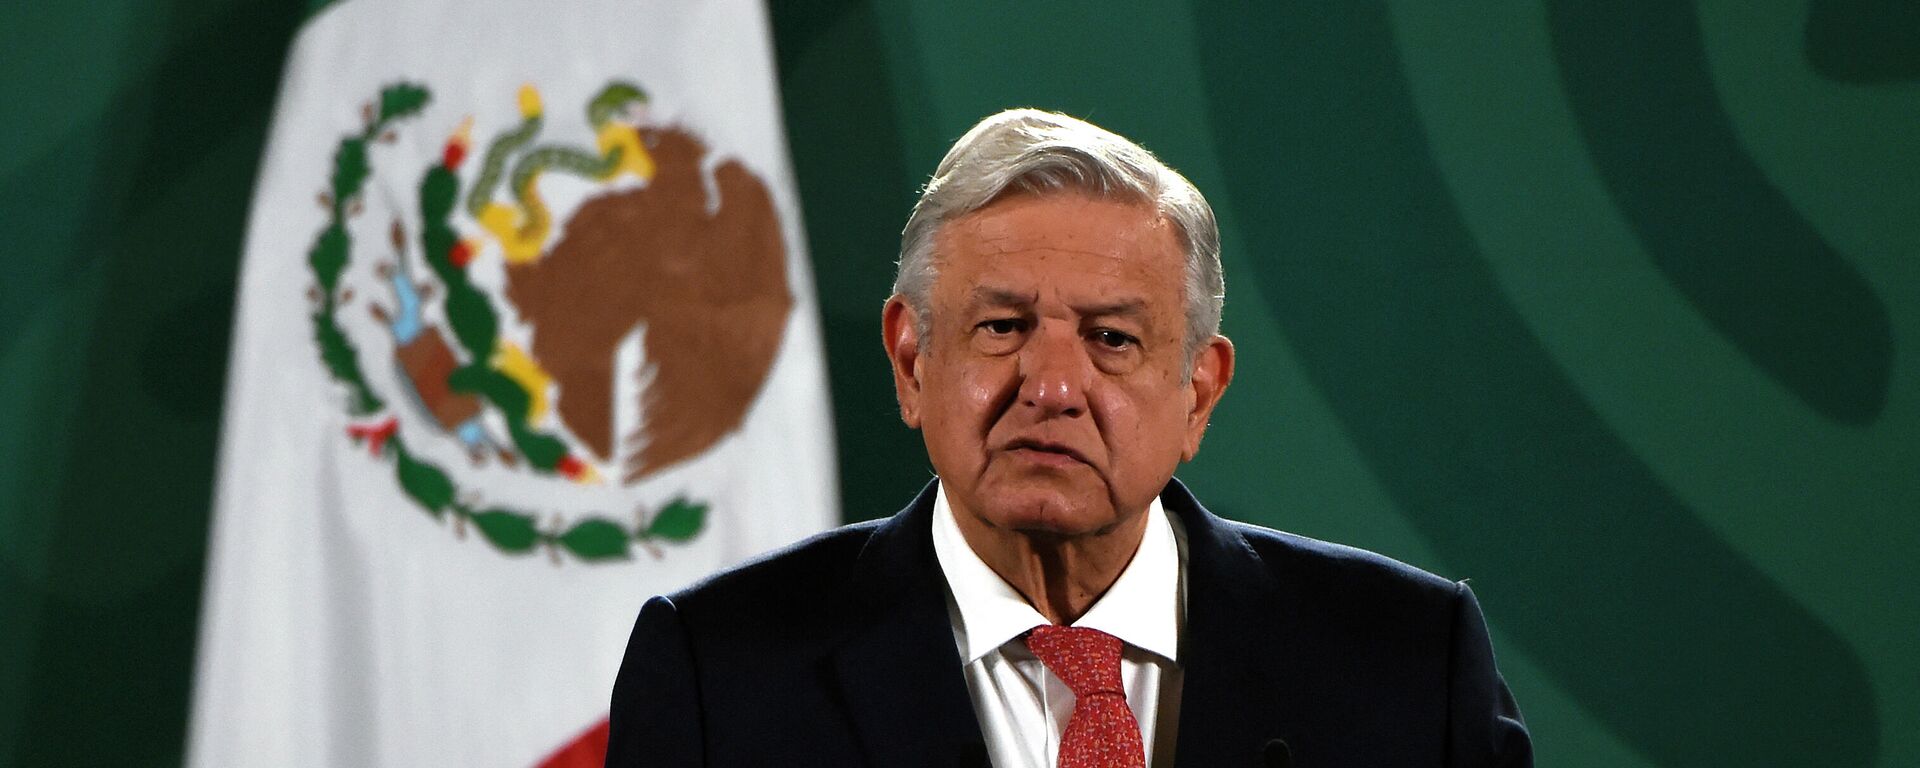 Andrés Manuel López Obrador, presidente de México - Sputnik Mundo, 1920, 13.09.2021